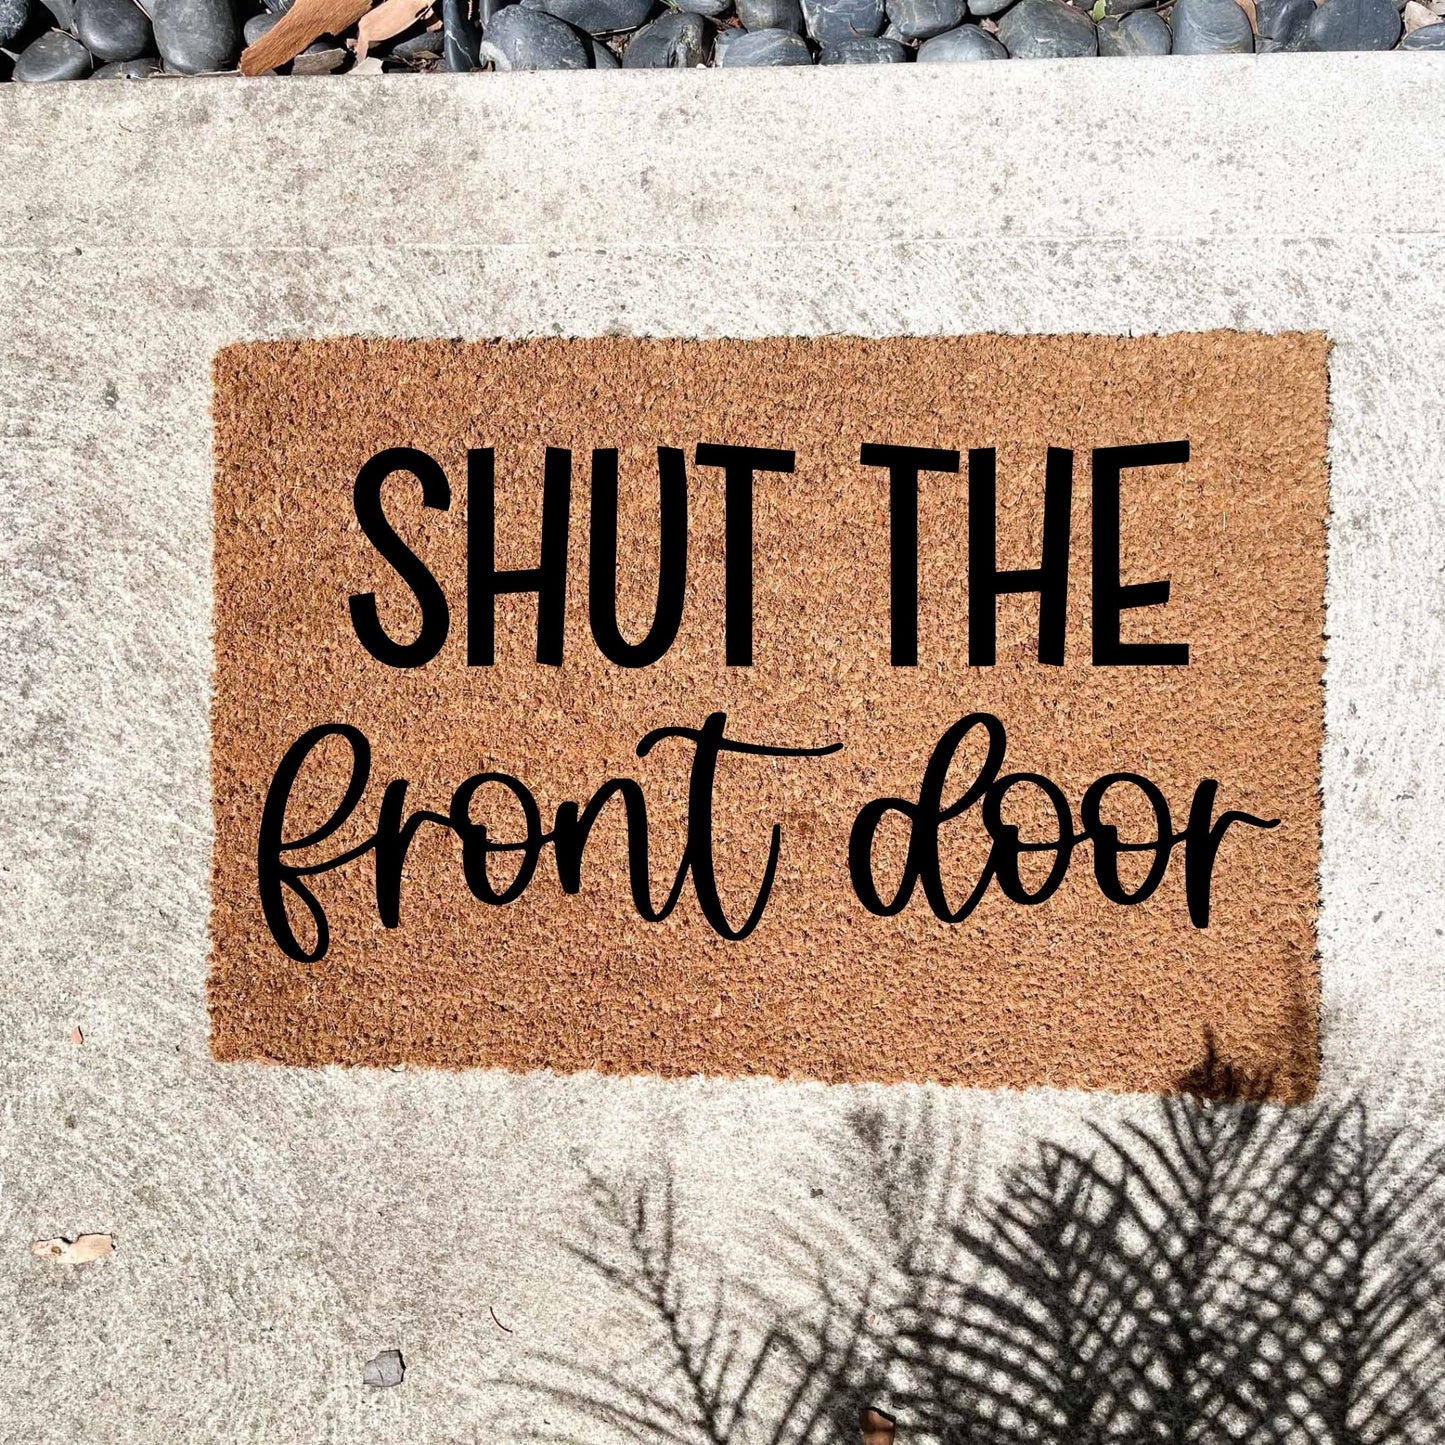 Shut the front door doormat, unique doormat, custom doormat, personalised doormat